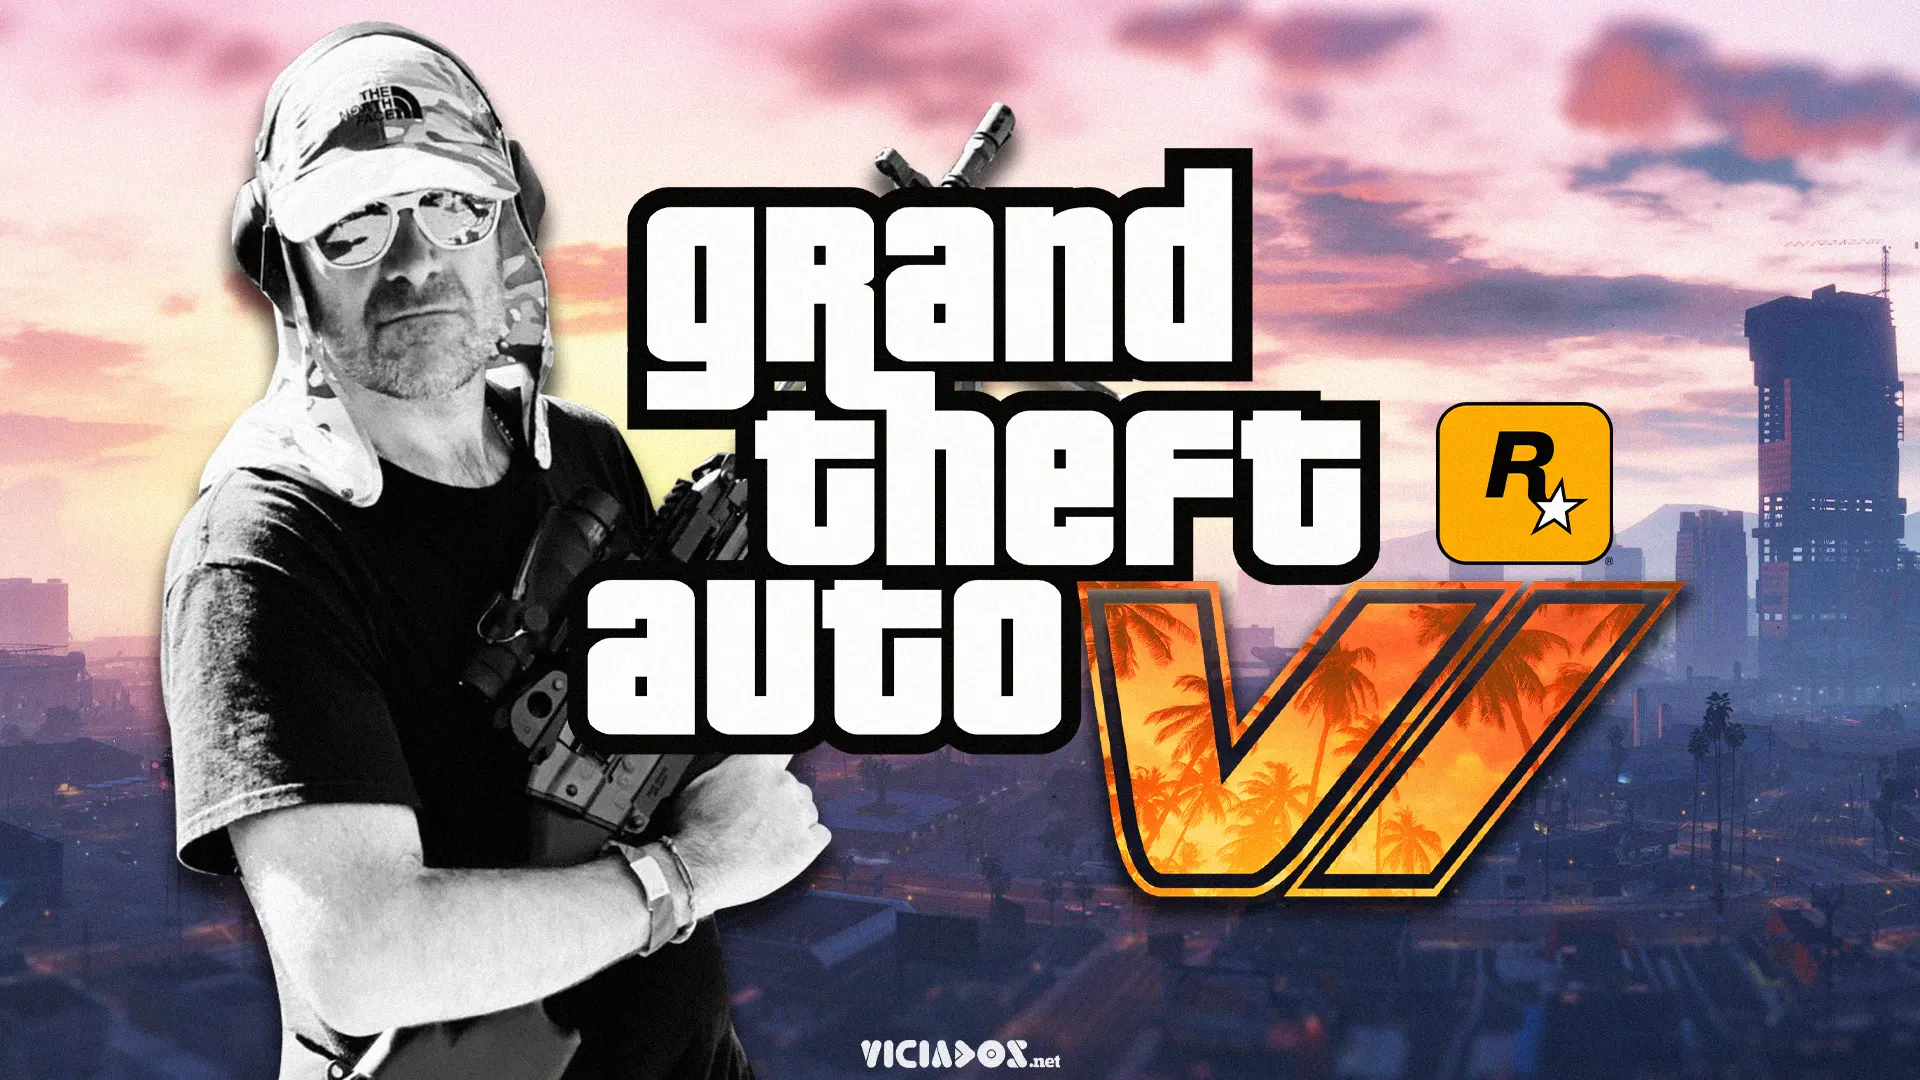 GTA 6 | Devido a política, Grand Theft Auto VI pode ser um fracasso; Saiba tudo! 2022 Viciados